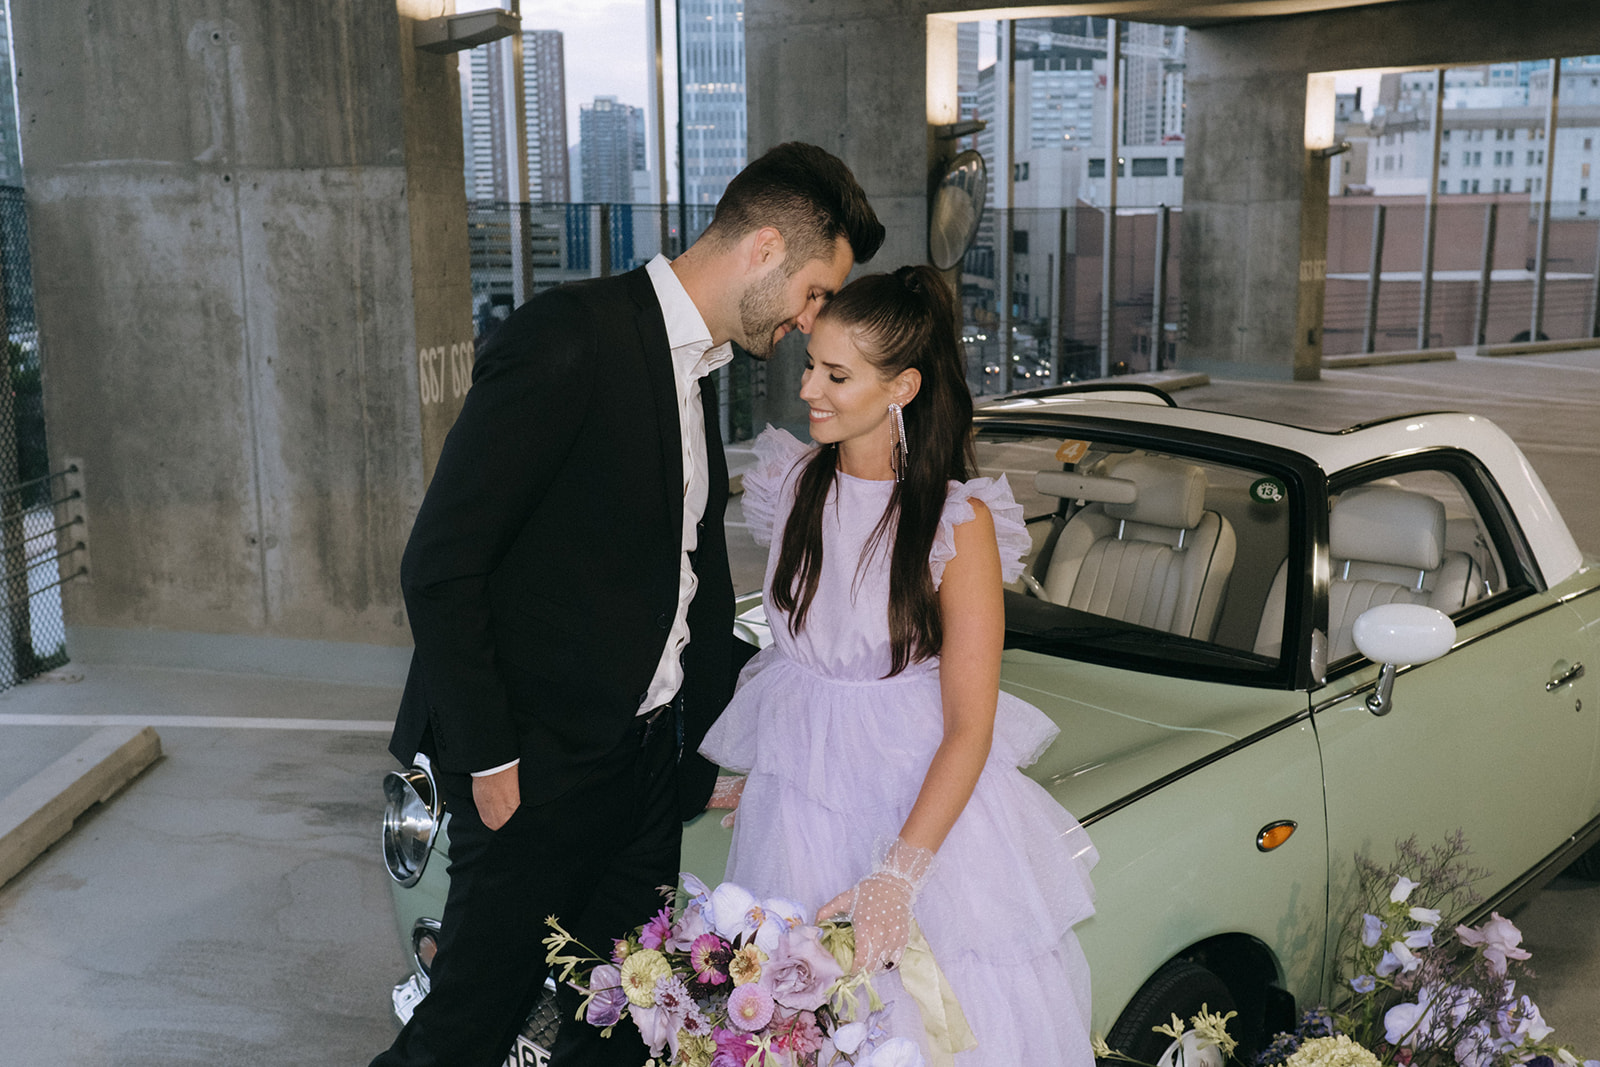 retro wedding with purple color palette and vintage car, alternative floral bouquet, wedding bouquet inspiration 